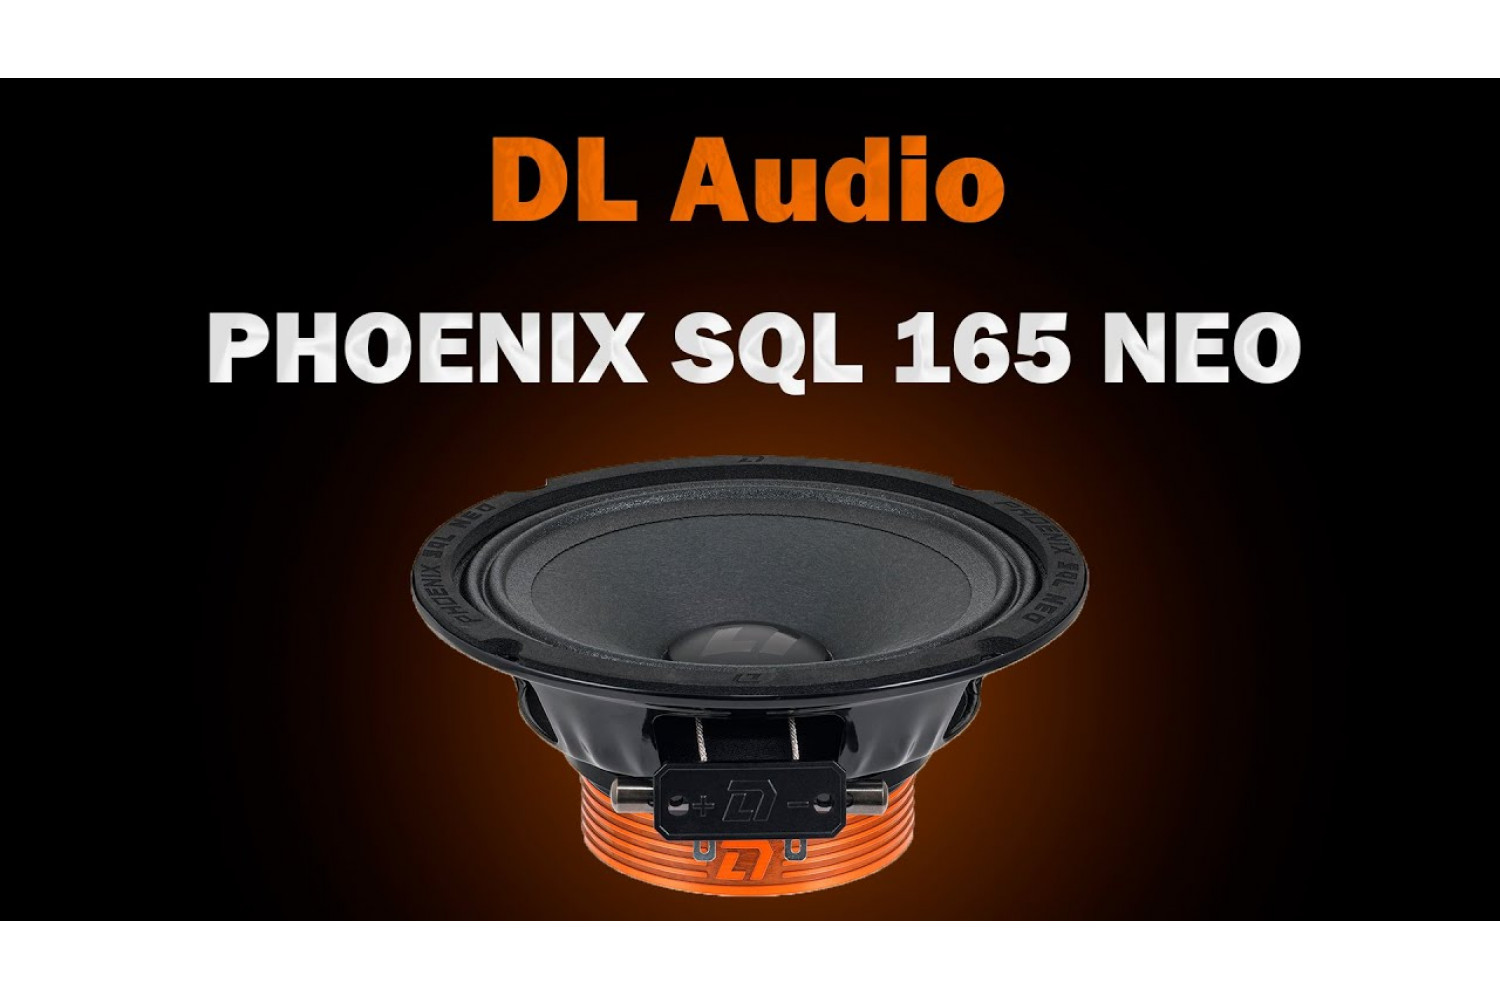 DL Audio Phoenix SQL 165 Neo